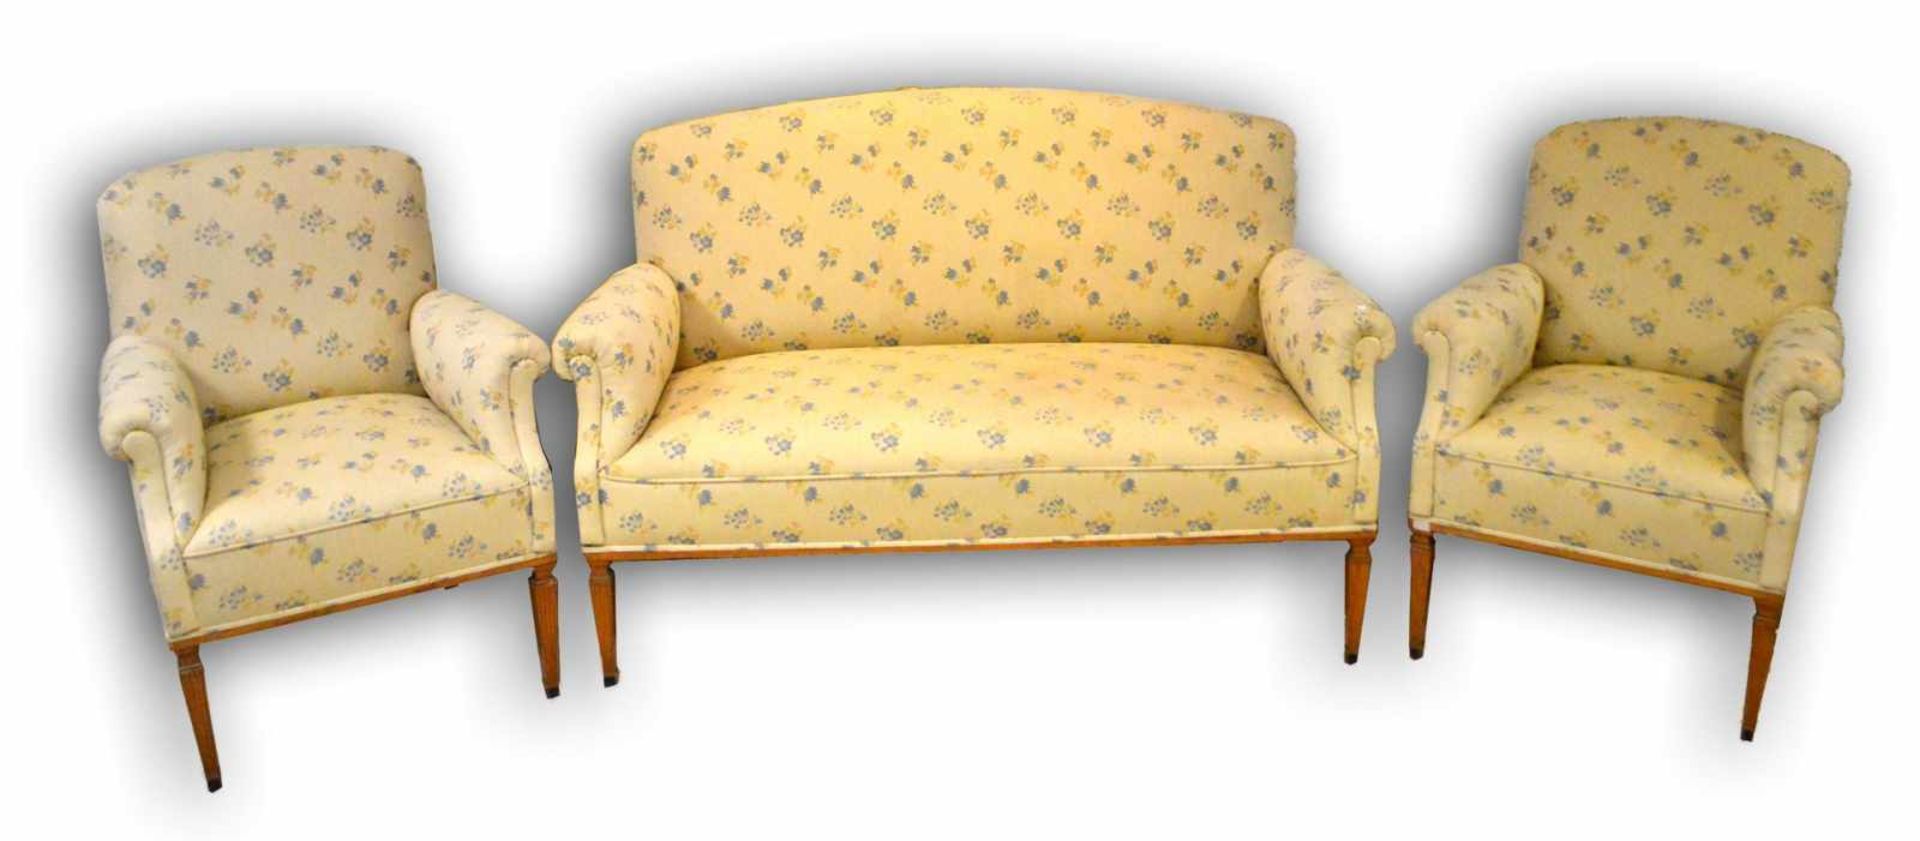 Sofa und zwei SesselKirschbaum, im Louis-Seize-Stil, kantige Füße, Sitz, Arm- und Rückenlehne